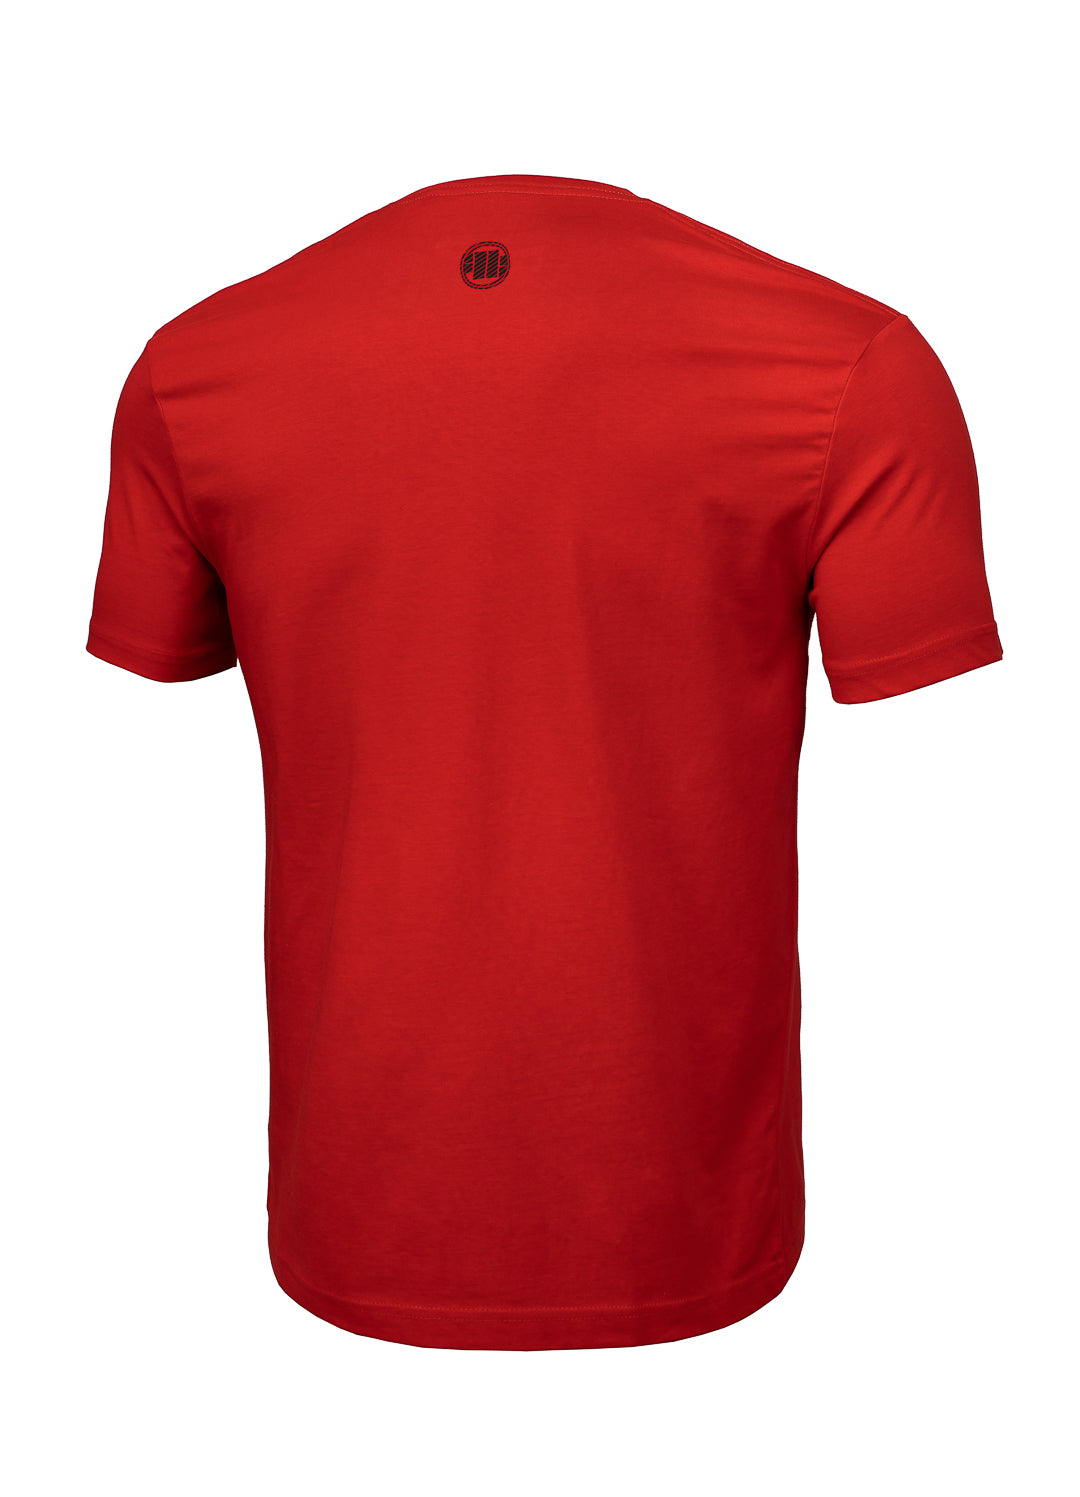 HILLTOP Lightweight Red T-shirt.